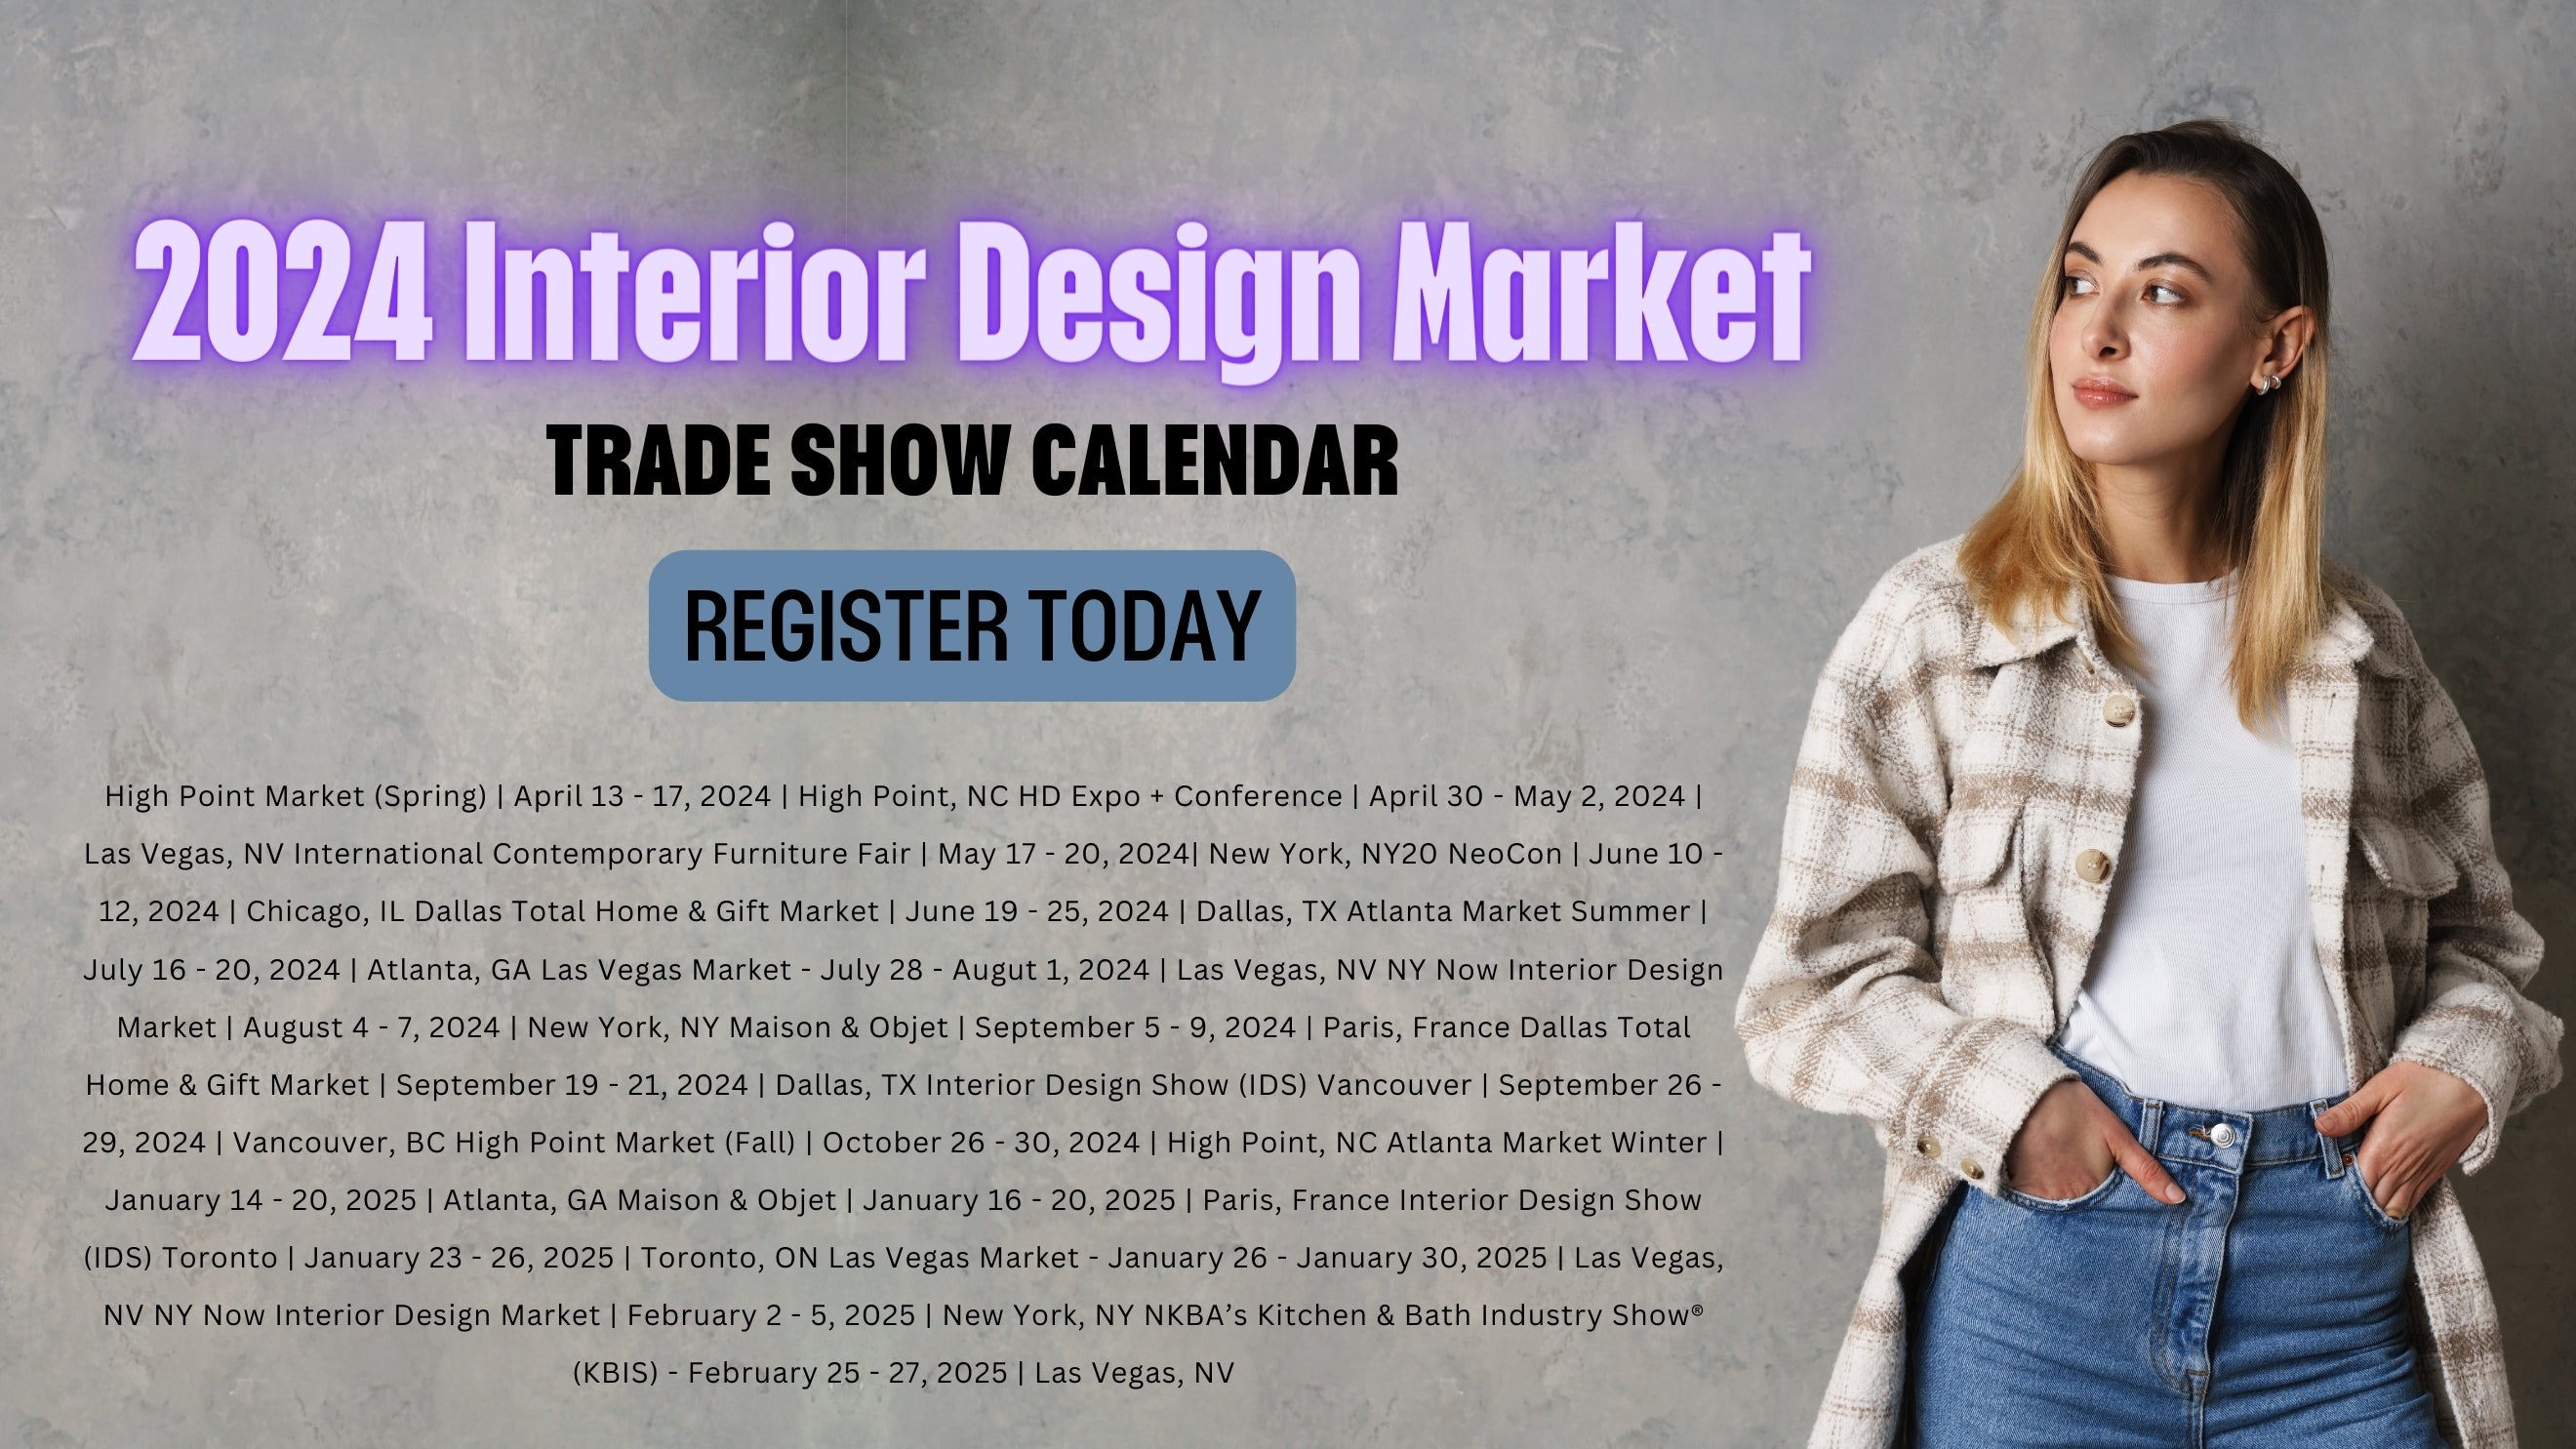 2024 Interior Design Market and Trade Show Calendar